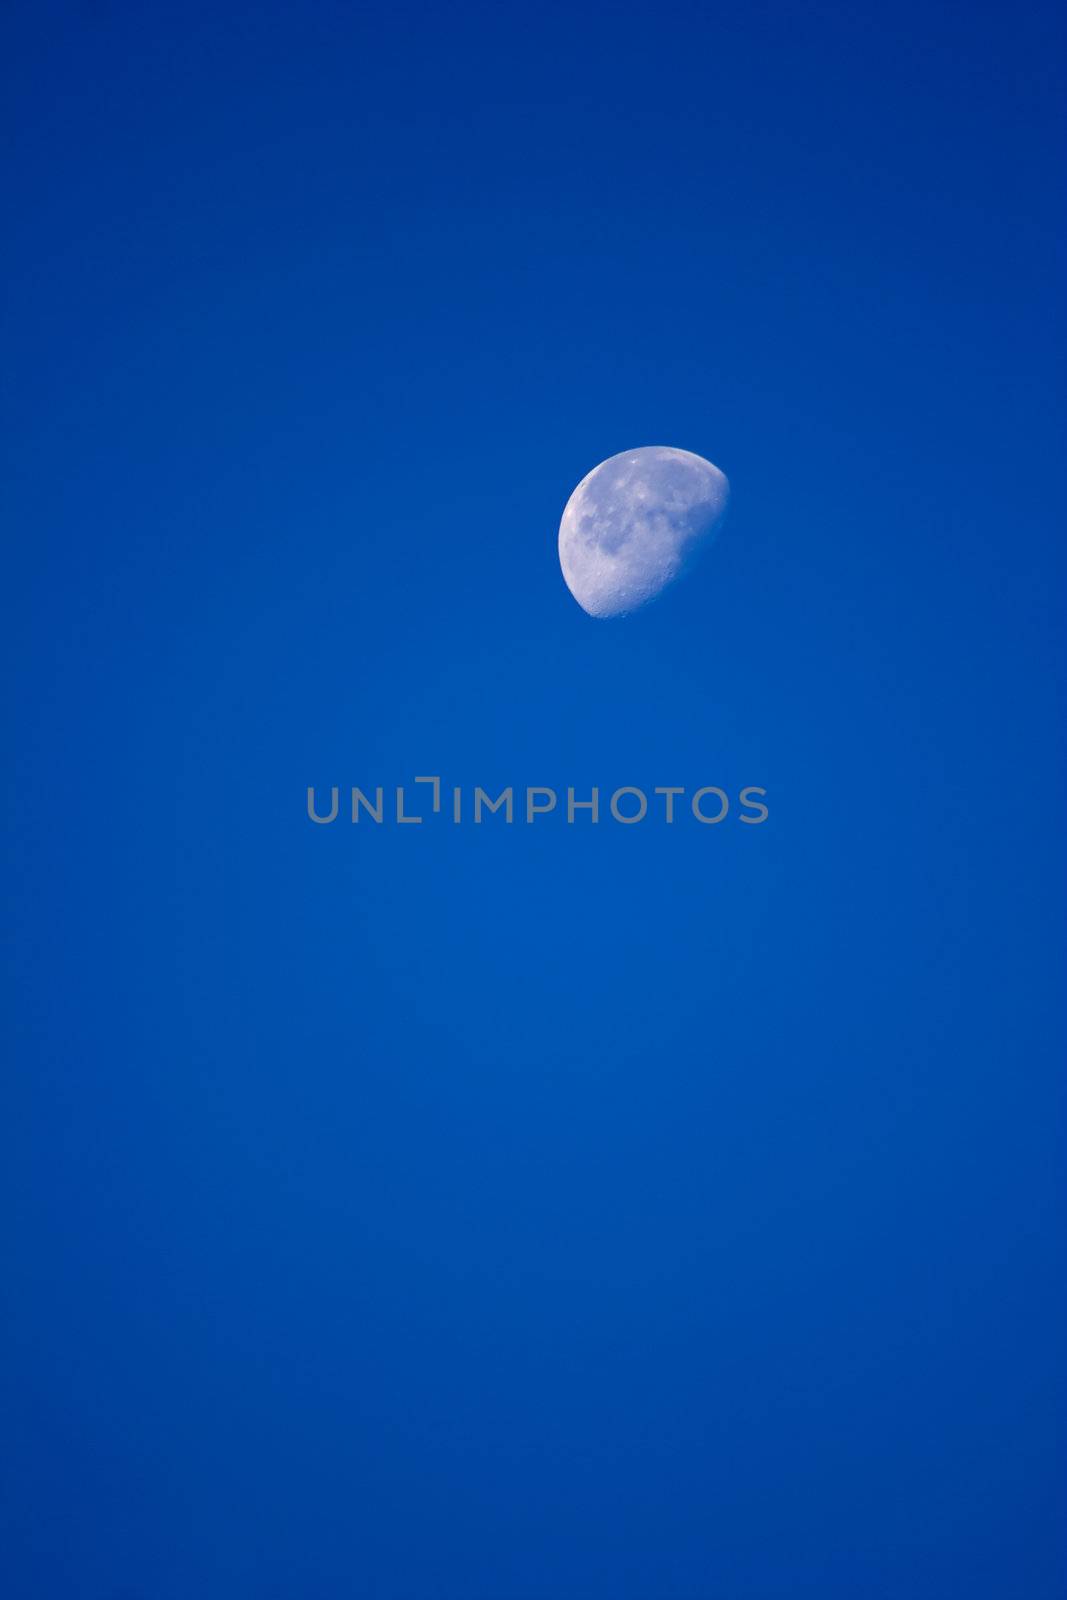 Moon by Imagecom